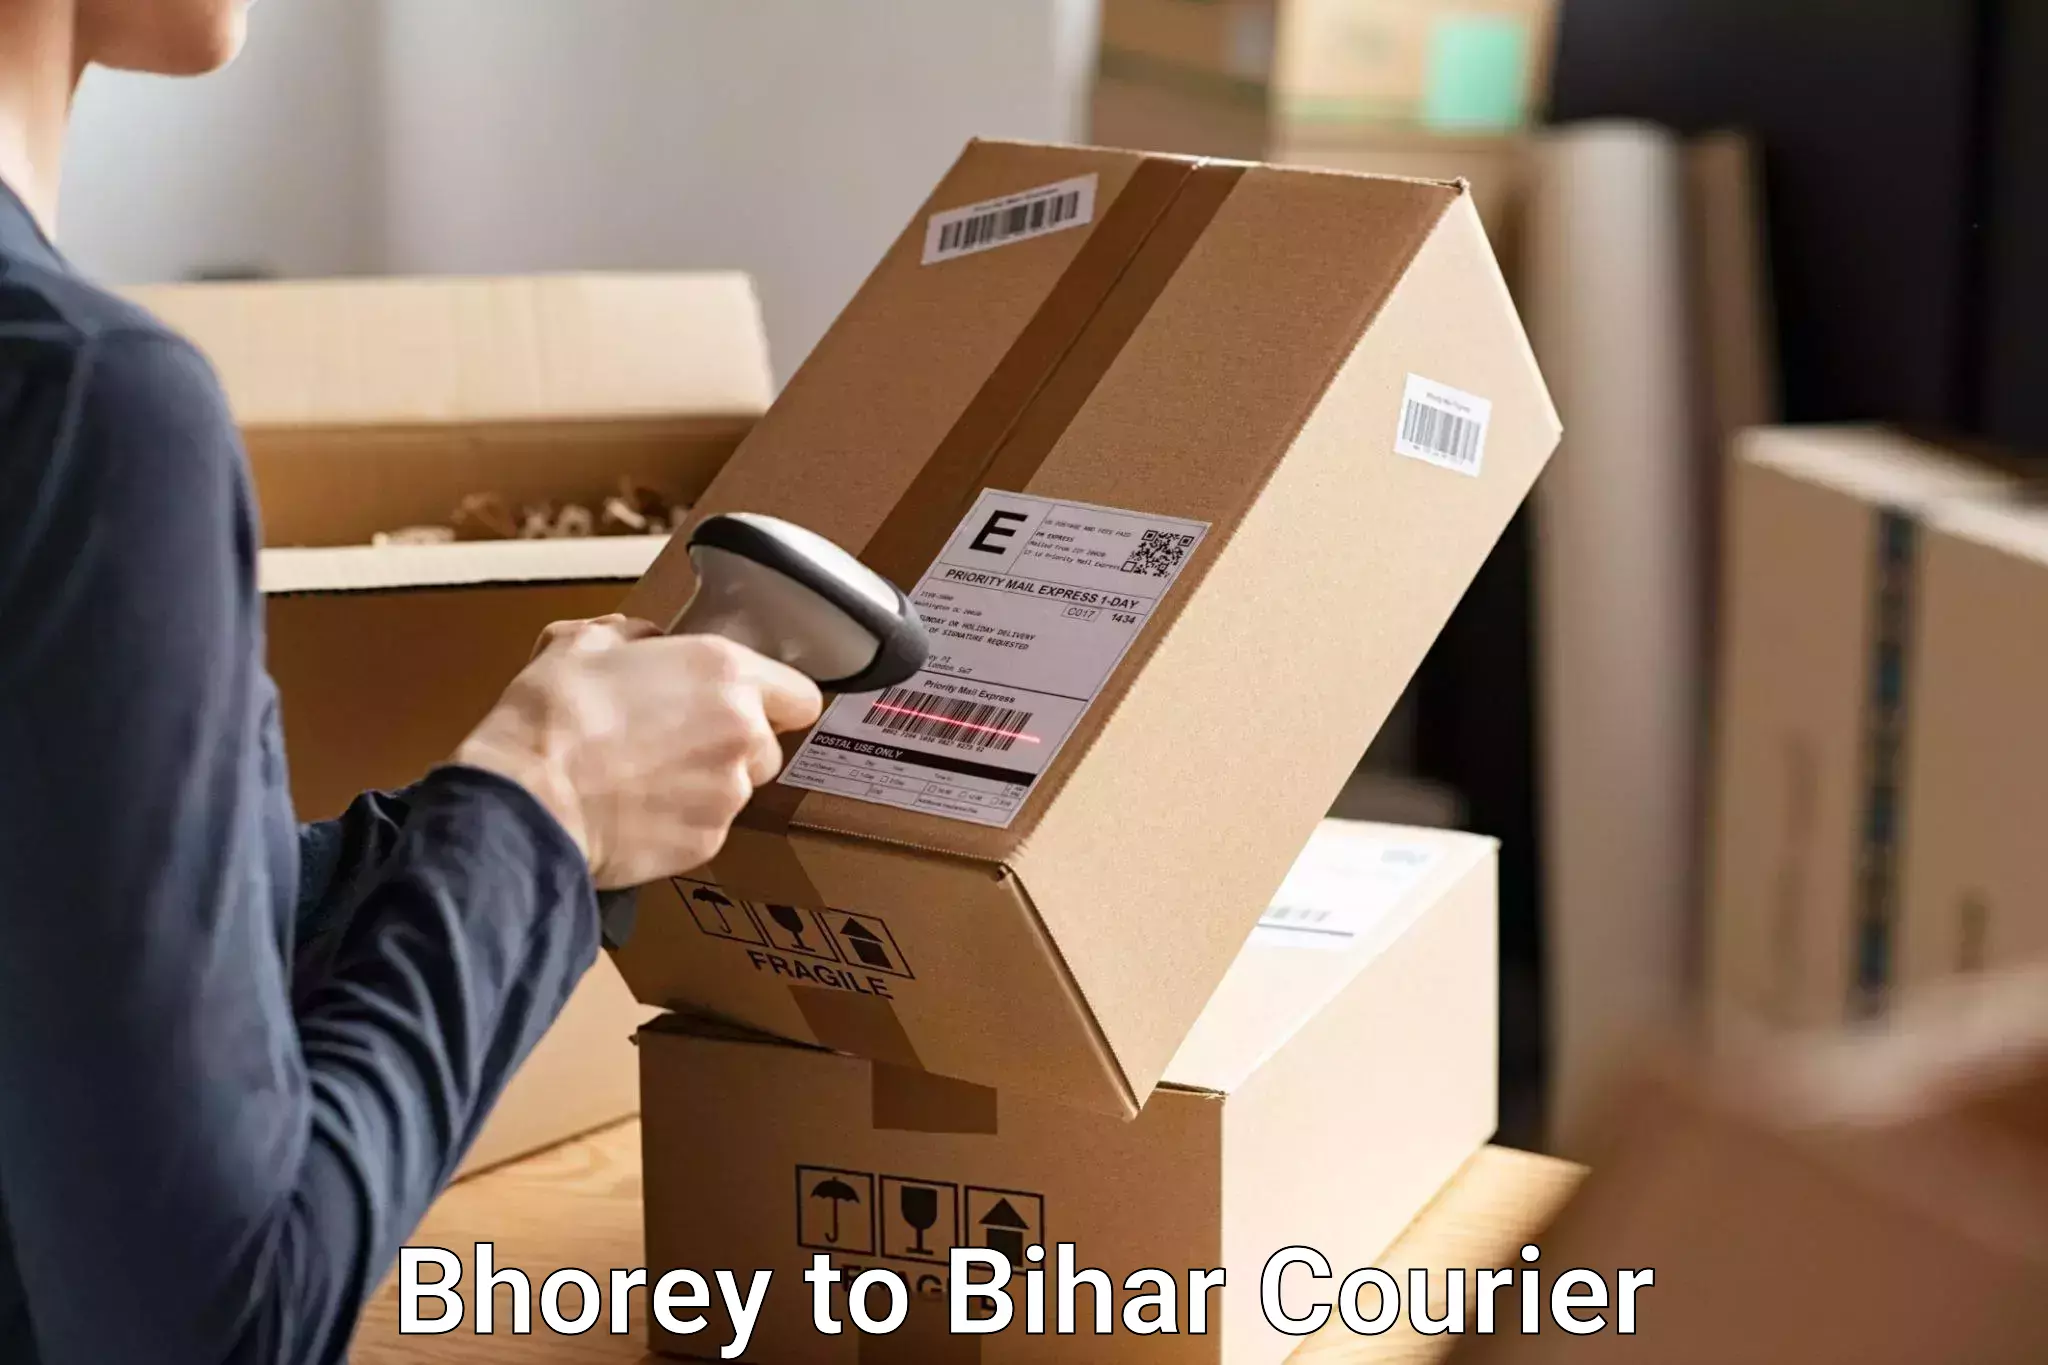 Baggage delivery optimization Bhorey to Bhorey